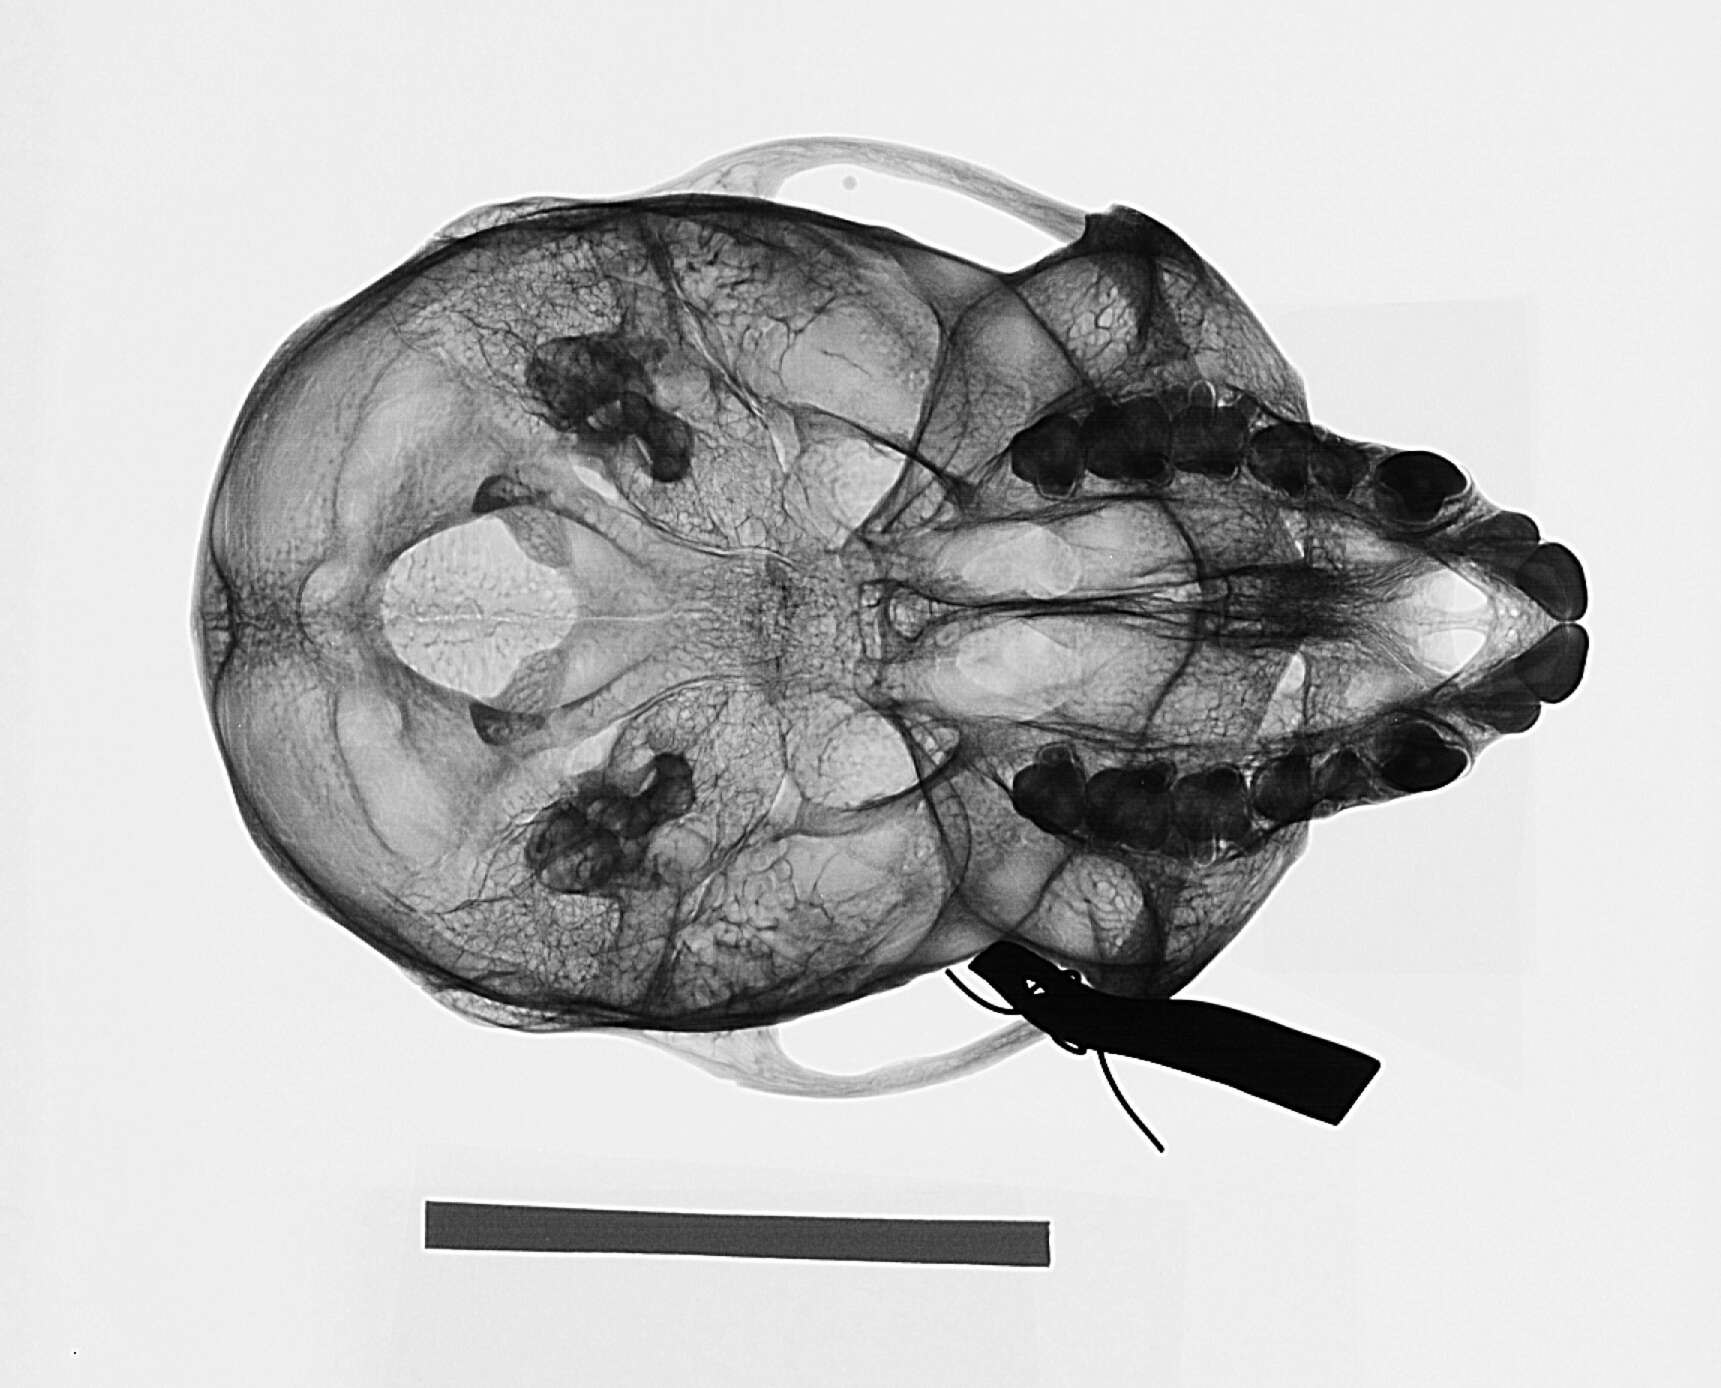 Sivun Cercopithecus mitis stuhlmanni Matschie 1893 kuva